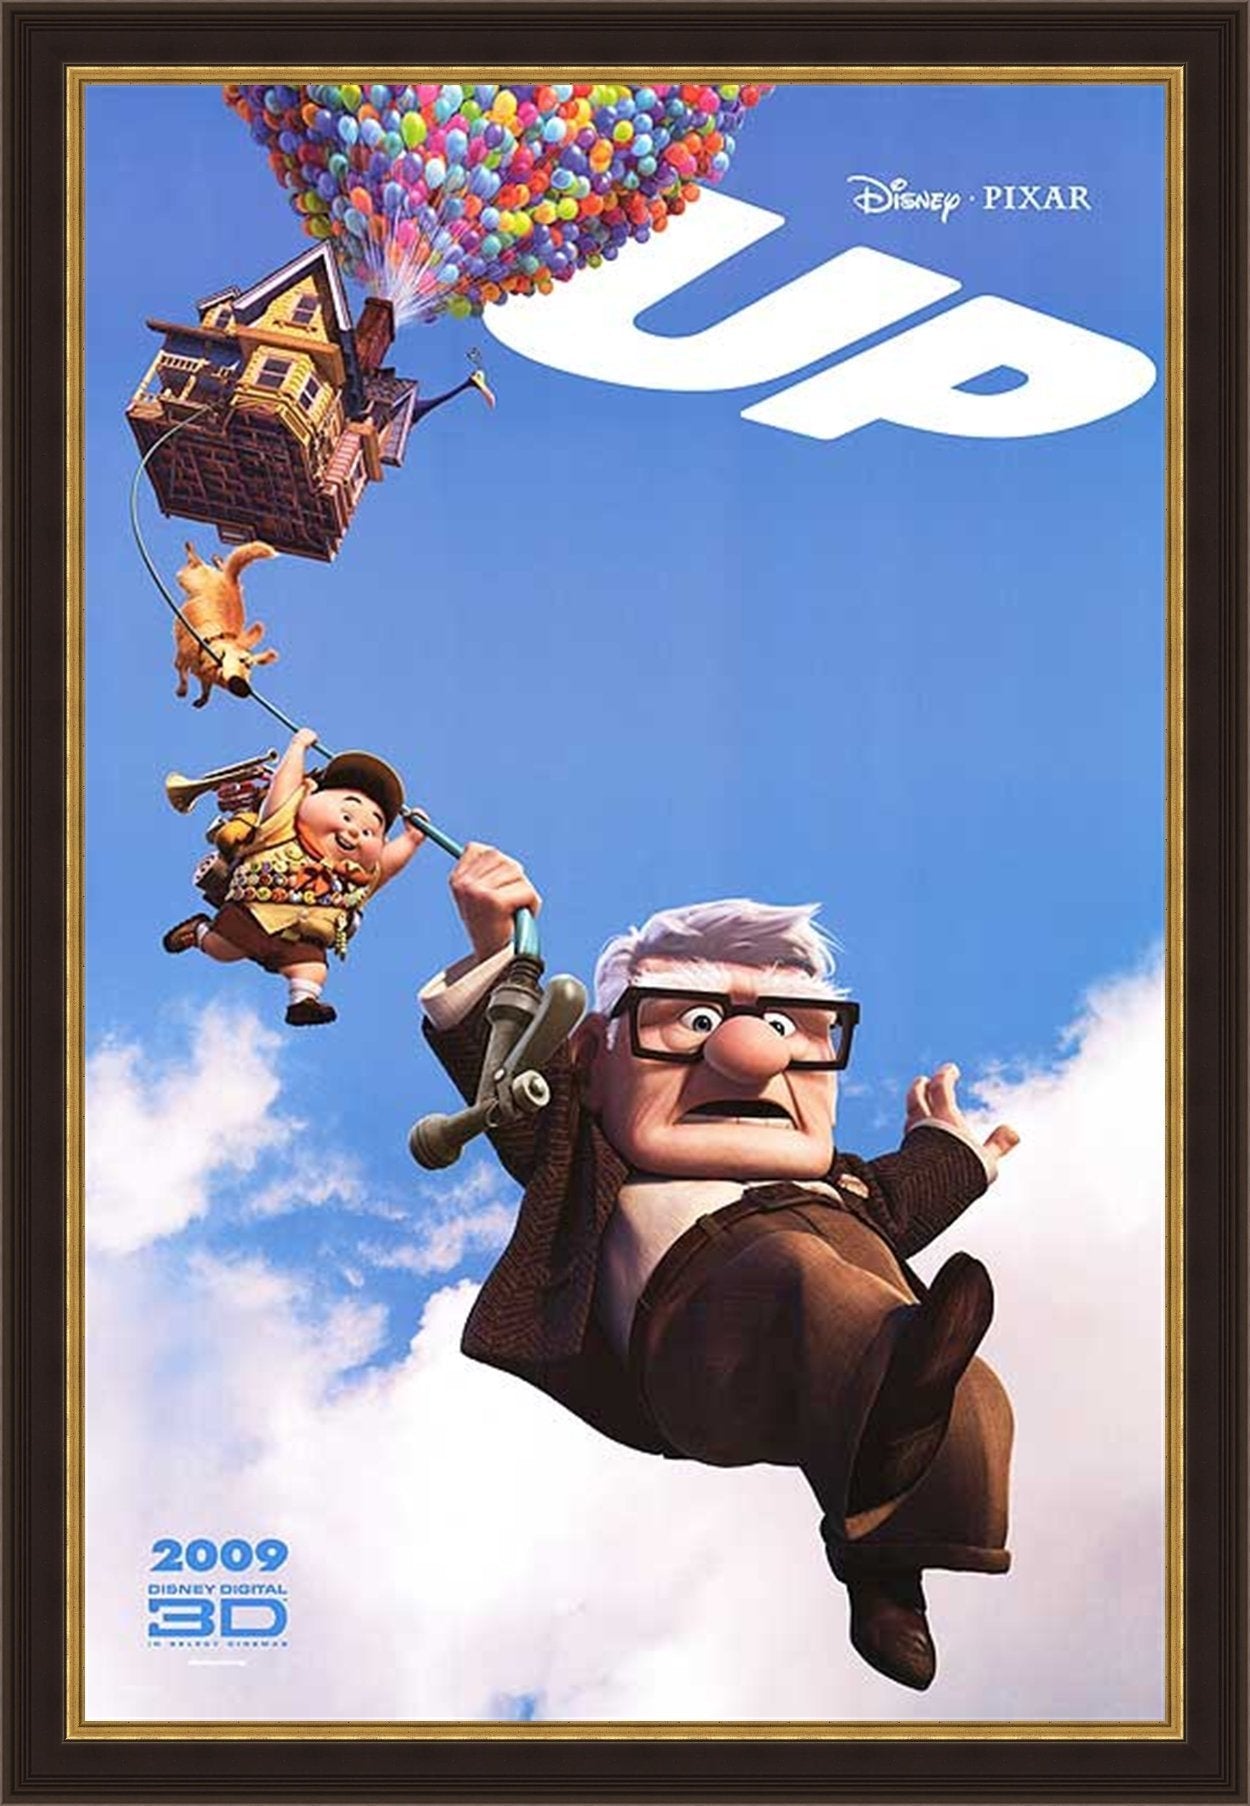 An original movie poster for the Disney Pixar film Up